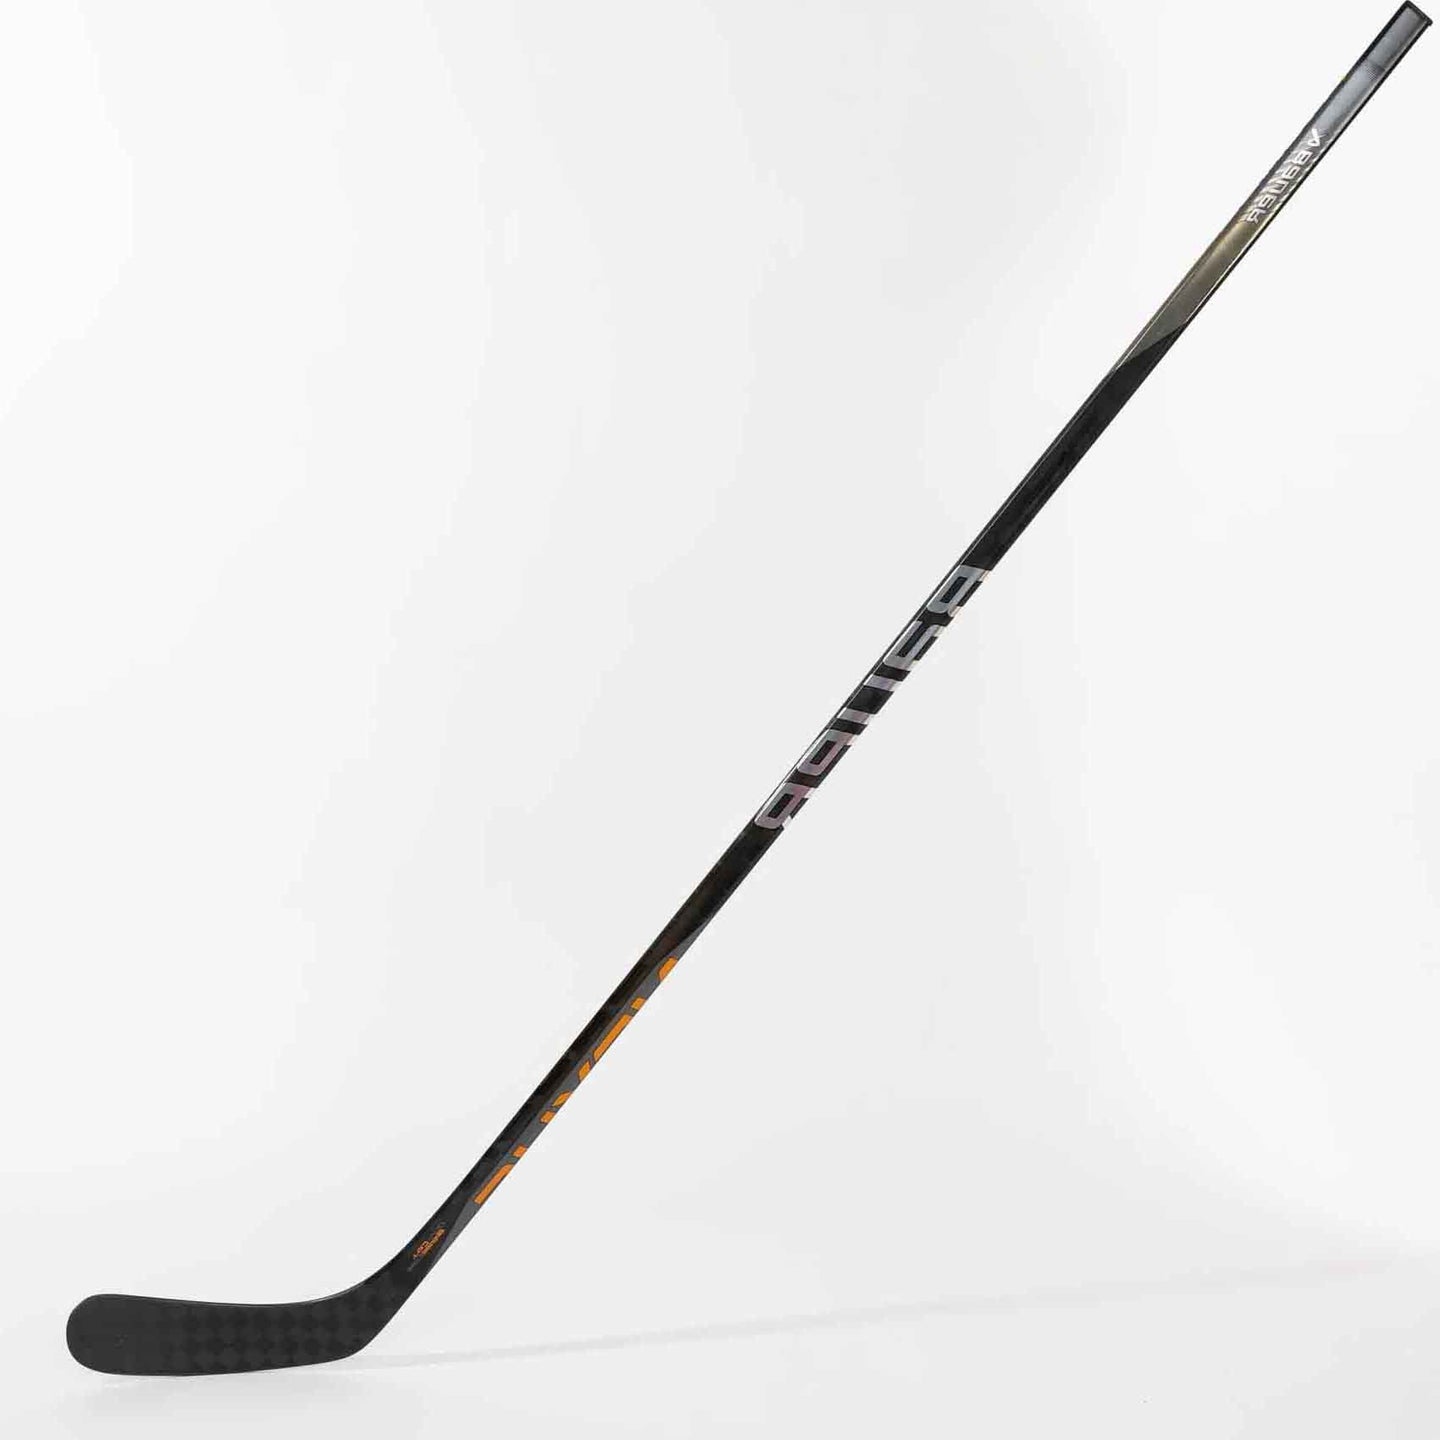 Bauer S22 Nexus Havok Grip Ice Hockey Stick - Senior